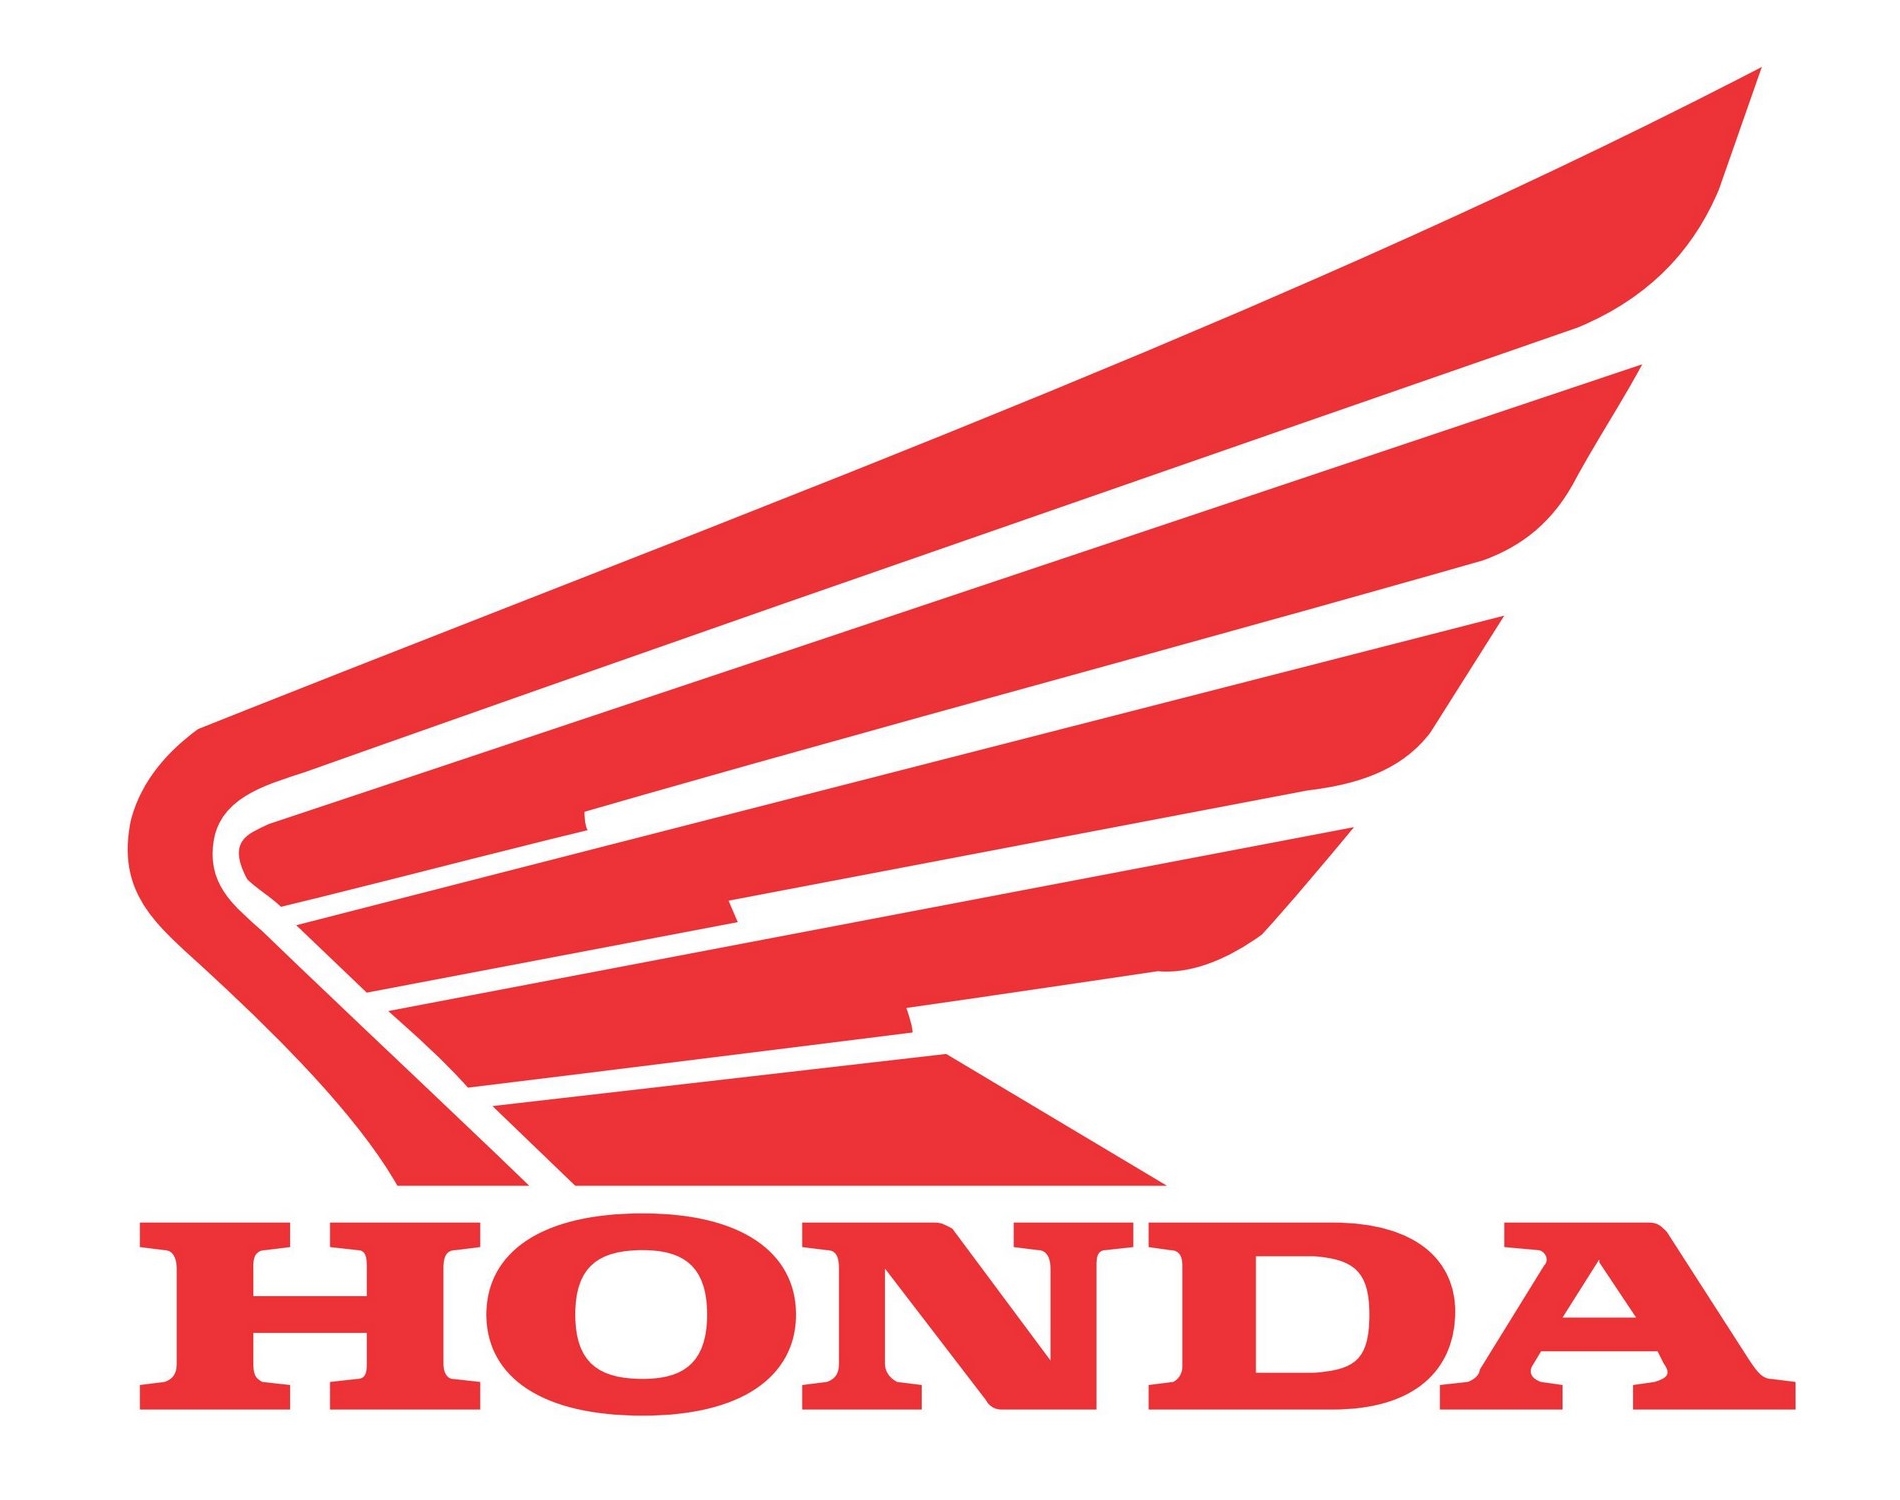 Honda – Logos Download